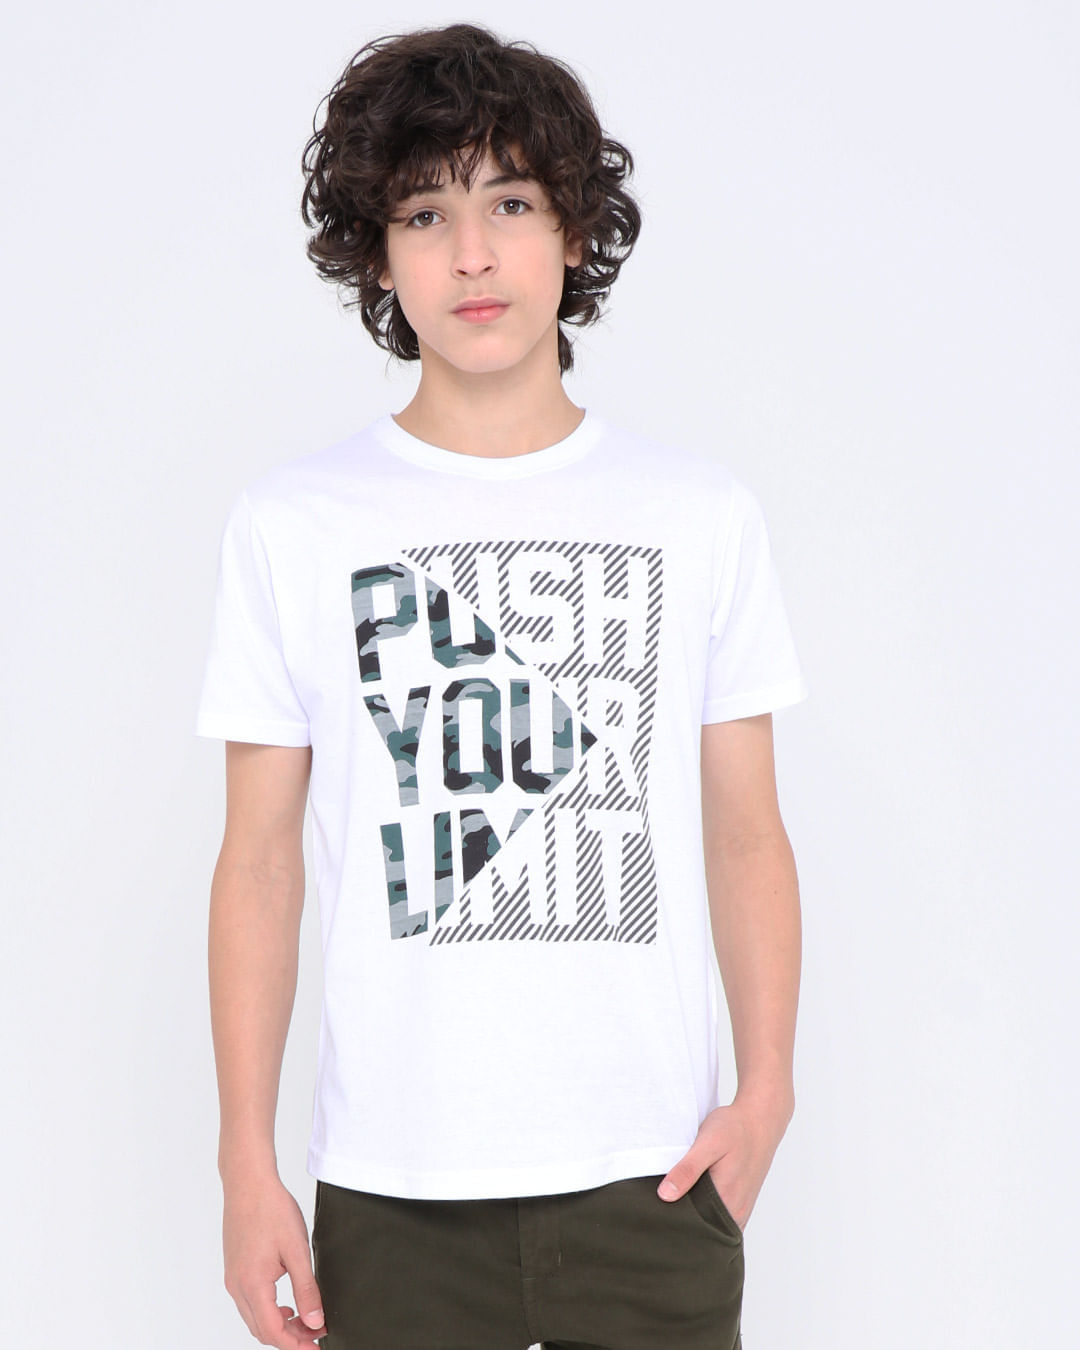 Camiseta-Juvenil-Manga-Curta-Estampa-Push-Camuflada-Branca